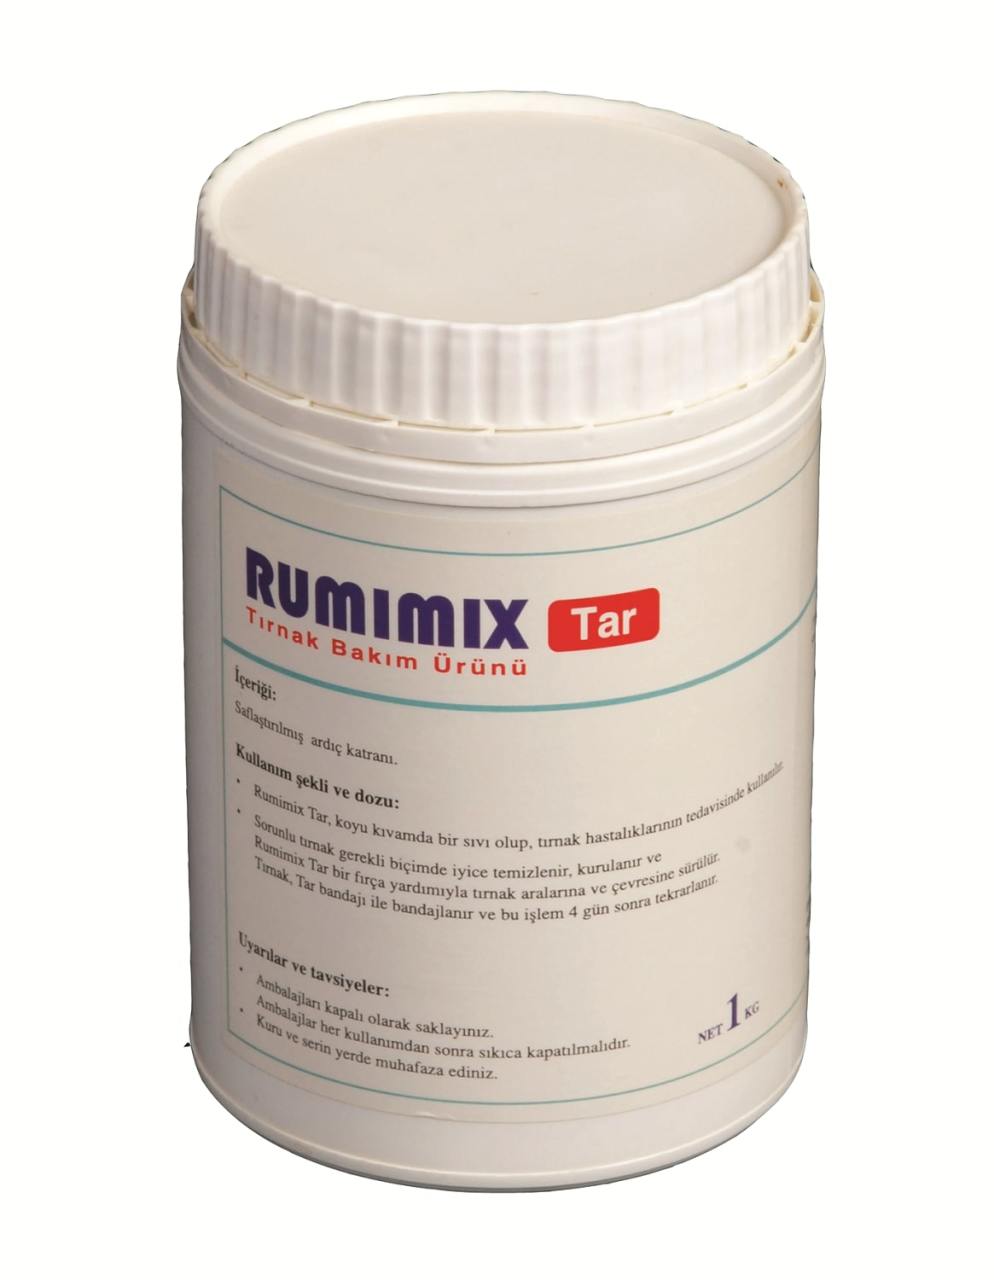 Rumimix Tar Tırnak Ardıç Katranı 1 kg